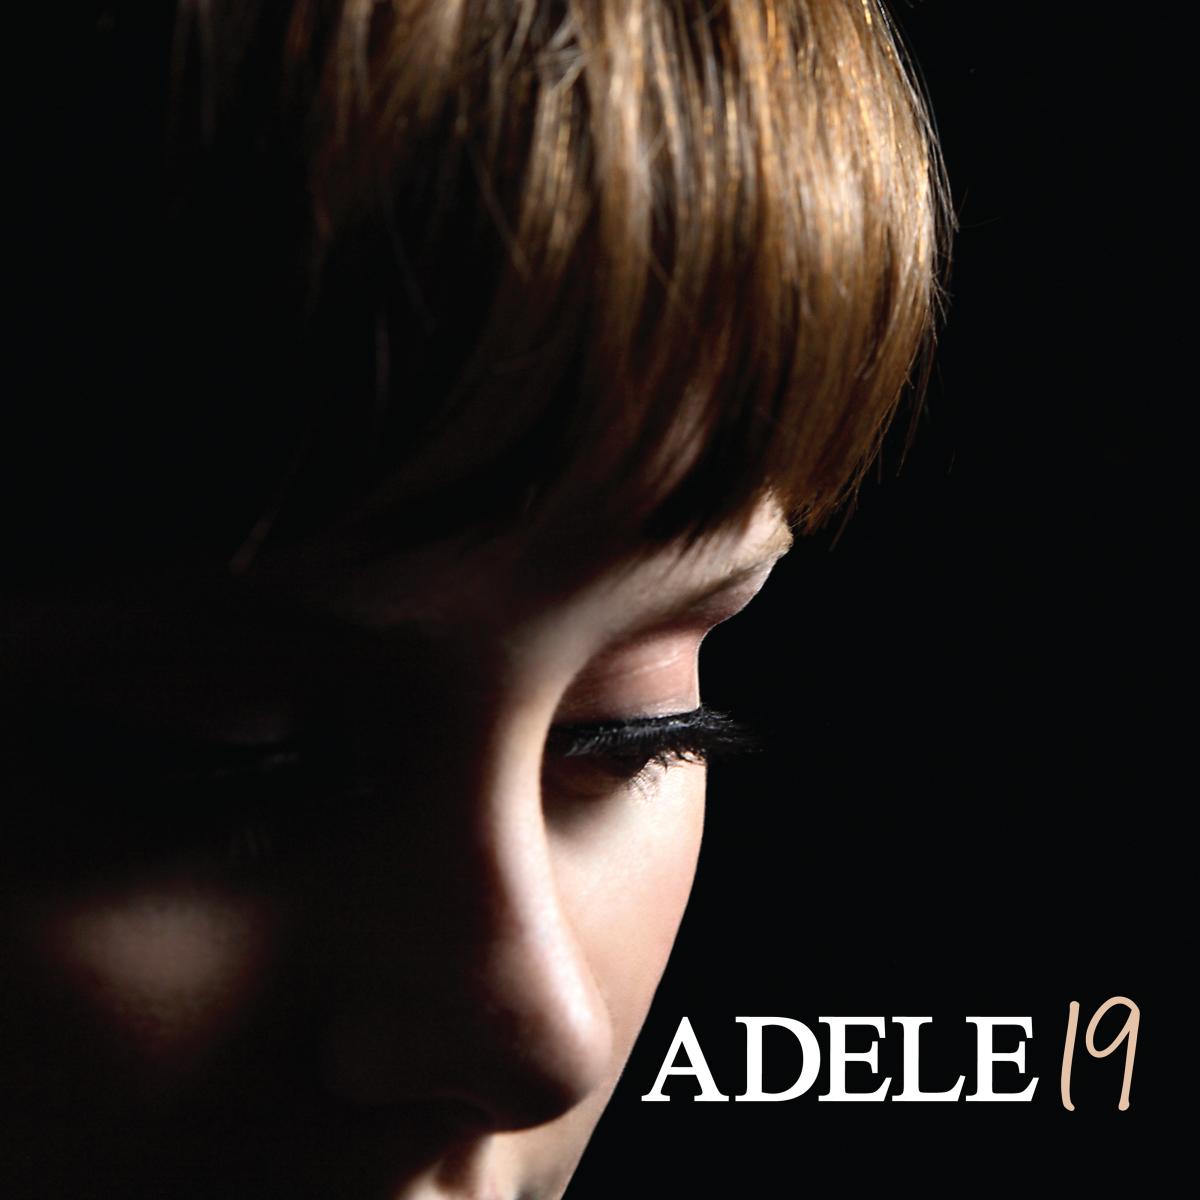 ADELE - 19 Vinyl LP